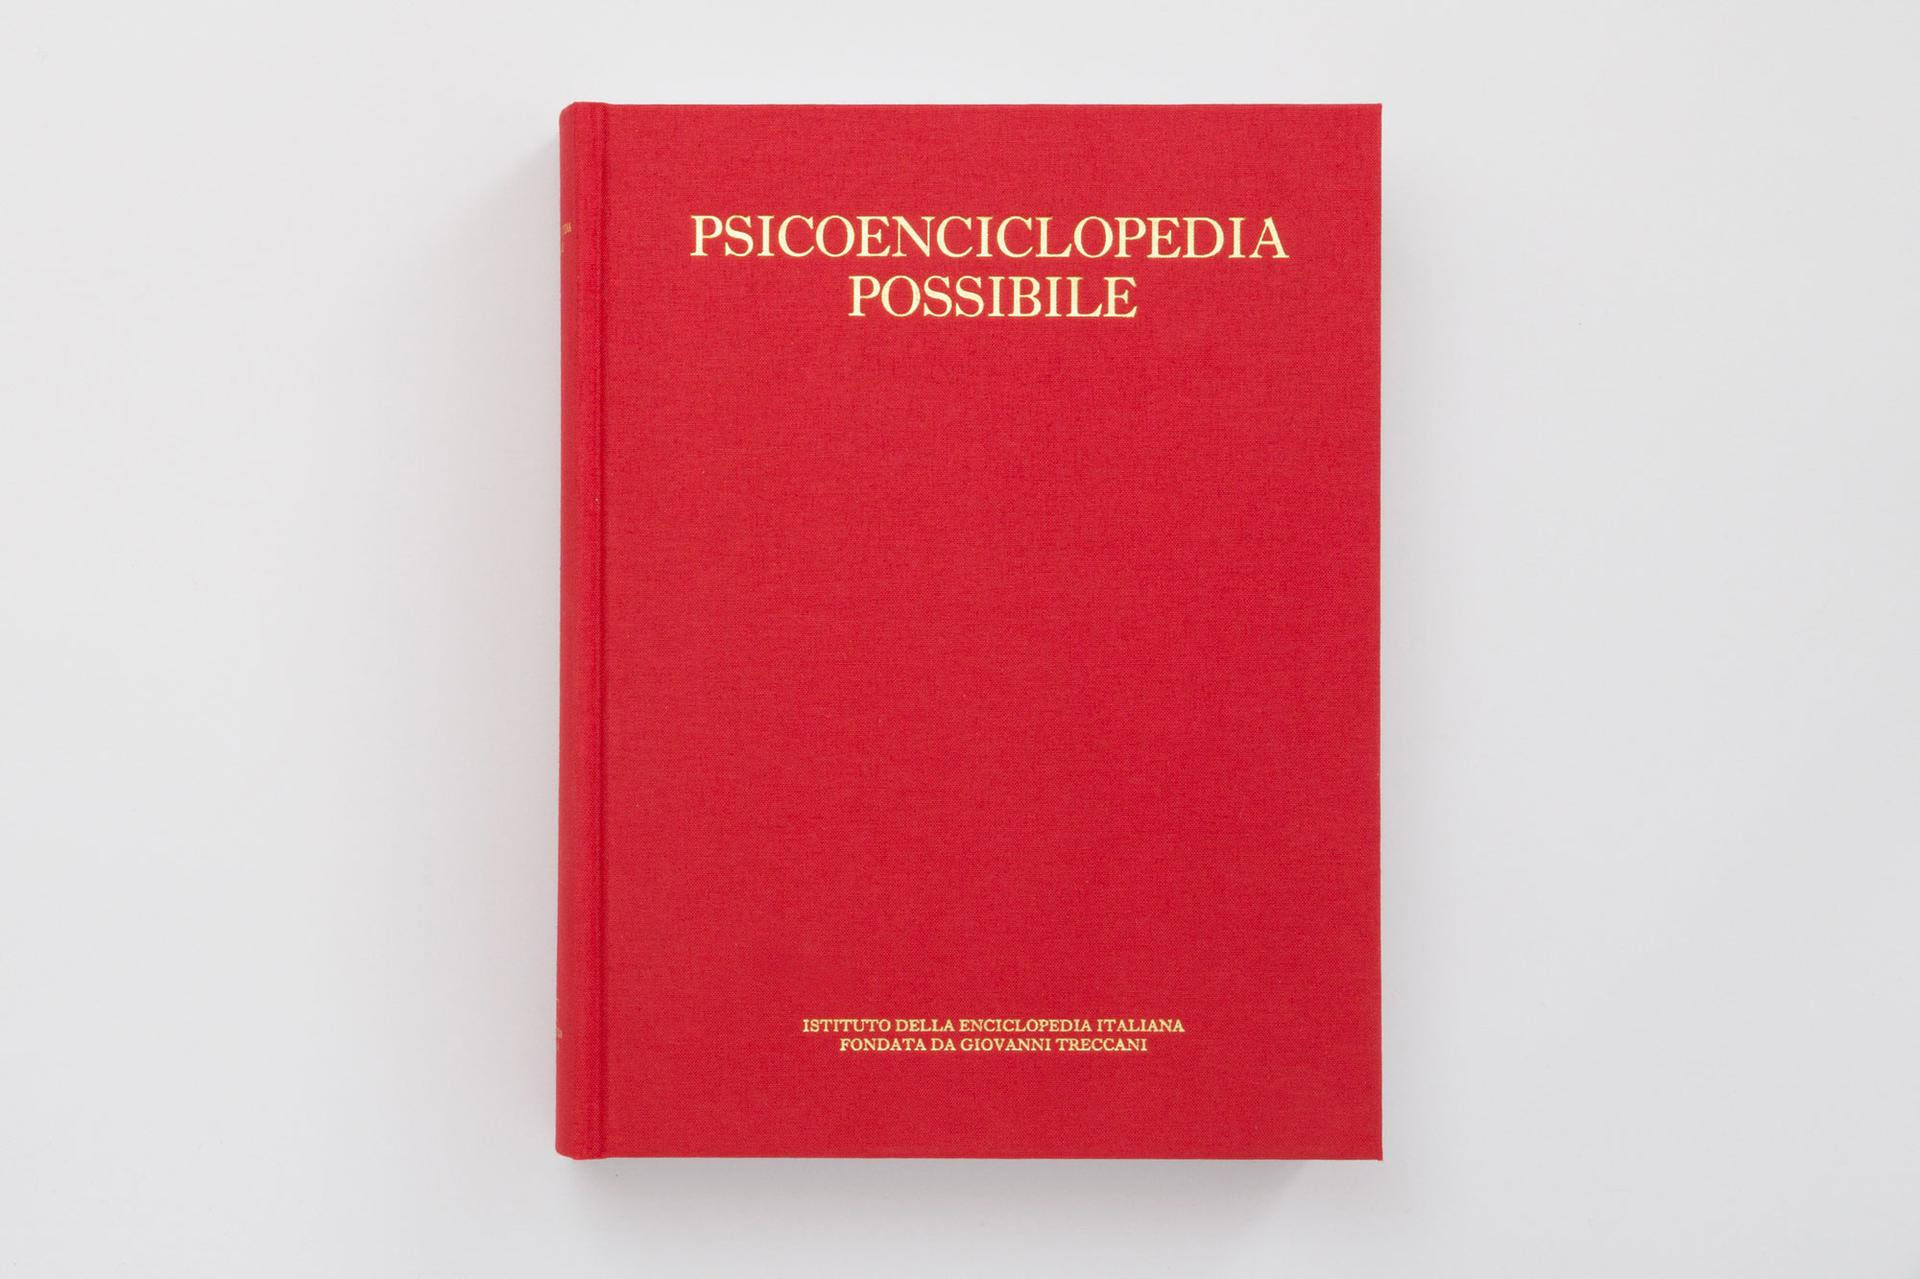 Gianfranco Baruchello – Psicoenciclopedia possibile